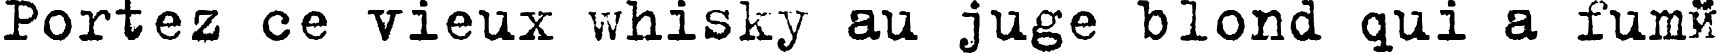 Пример написания шрифтом B52 текста на французском